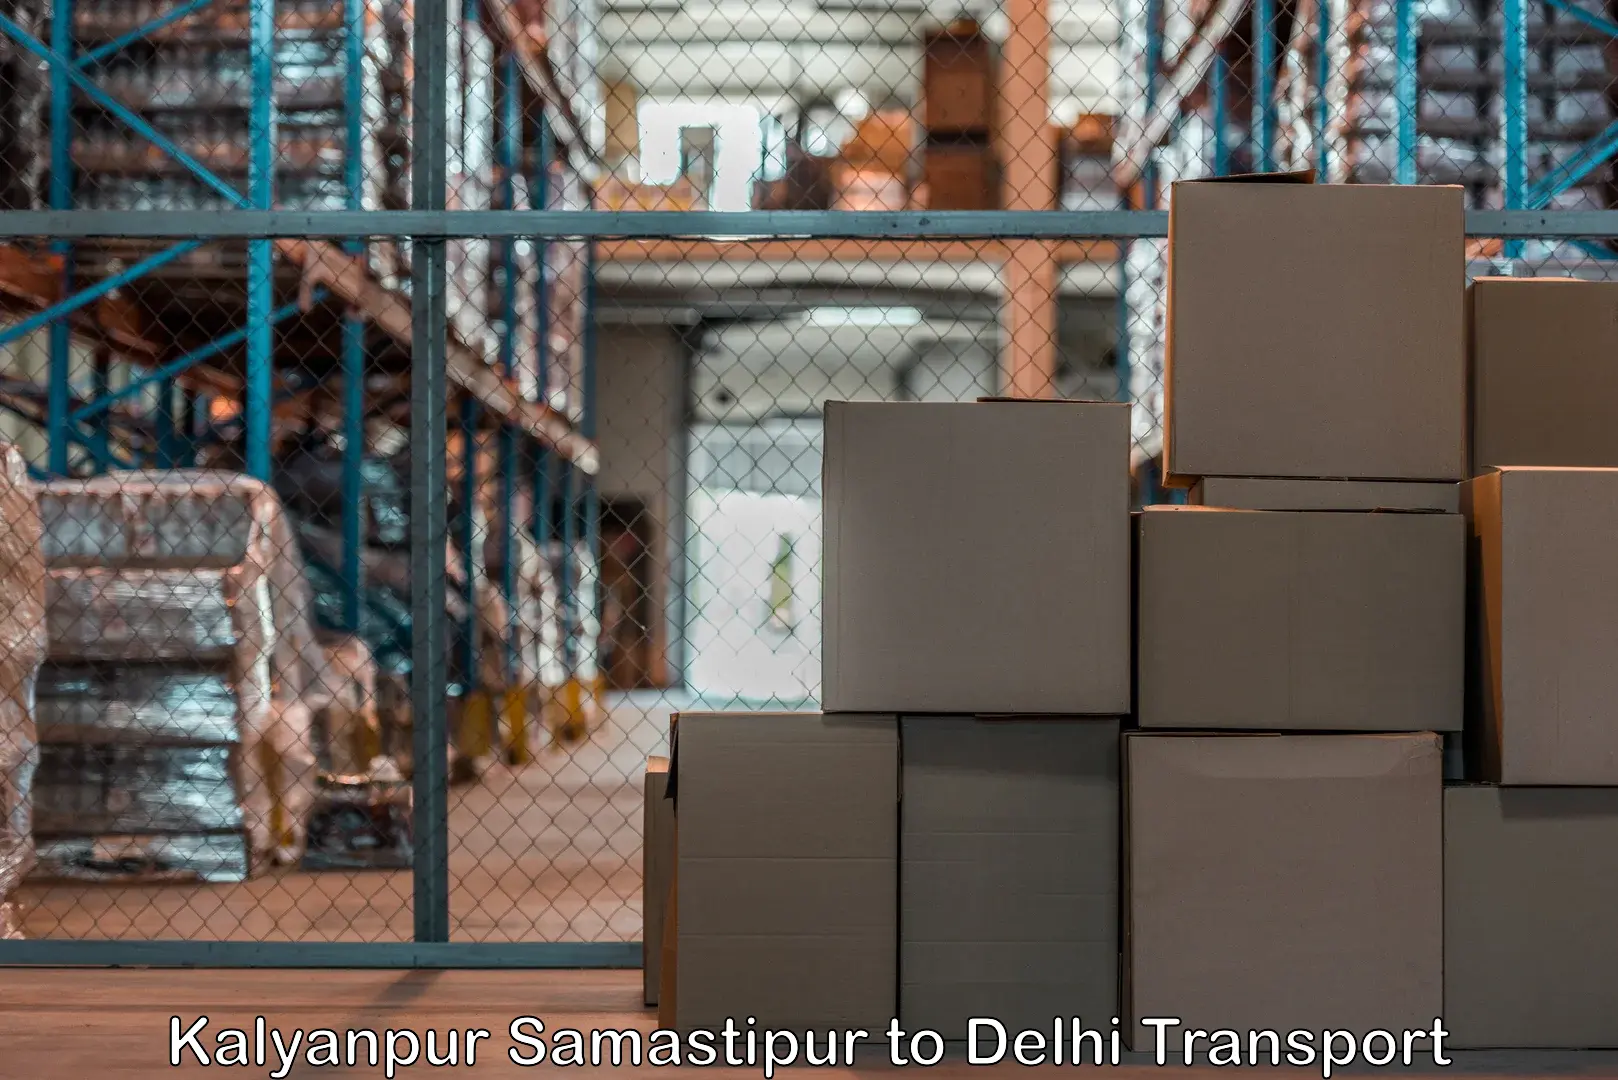 Air cargo transport services Kalyanpur Samastipur to IIT Delhi